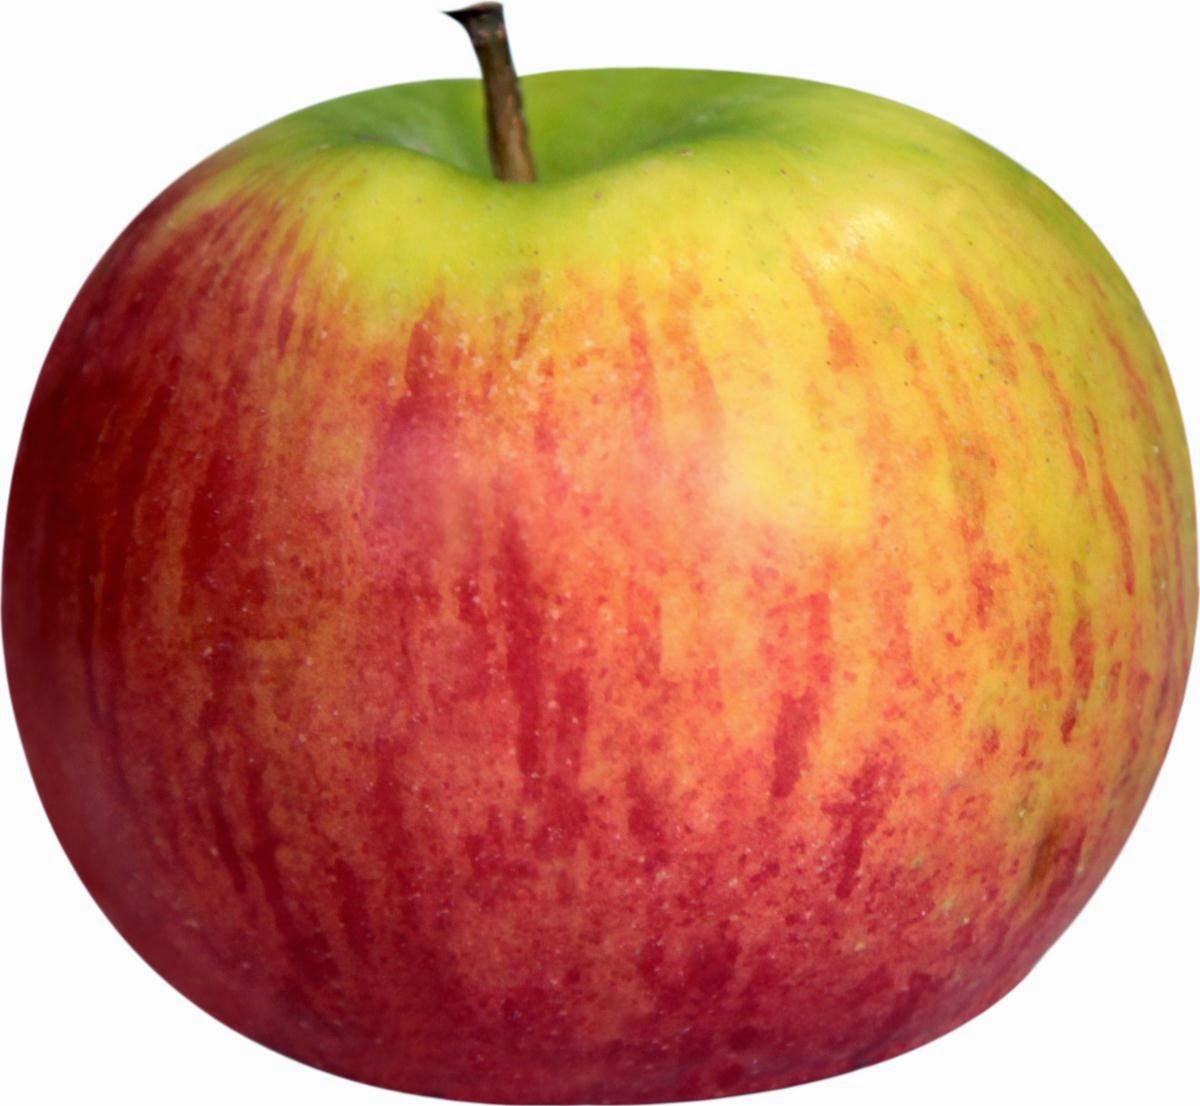  Gambar  Buah  Apel Segar Aku Buah  Sehat